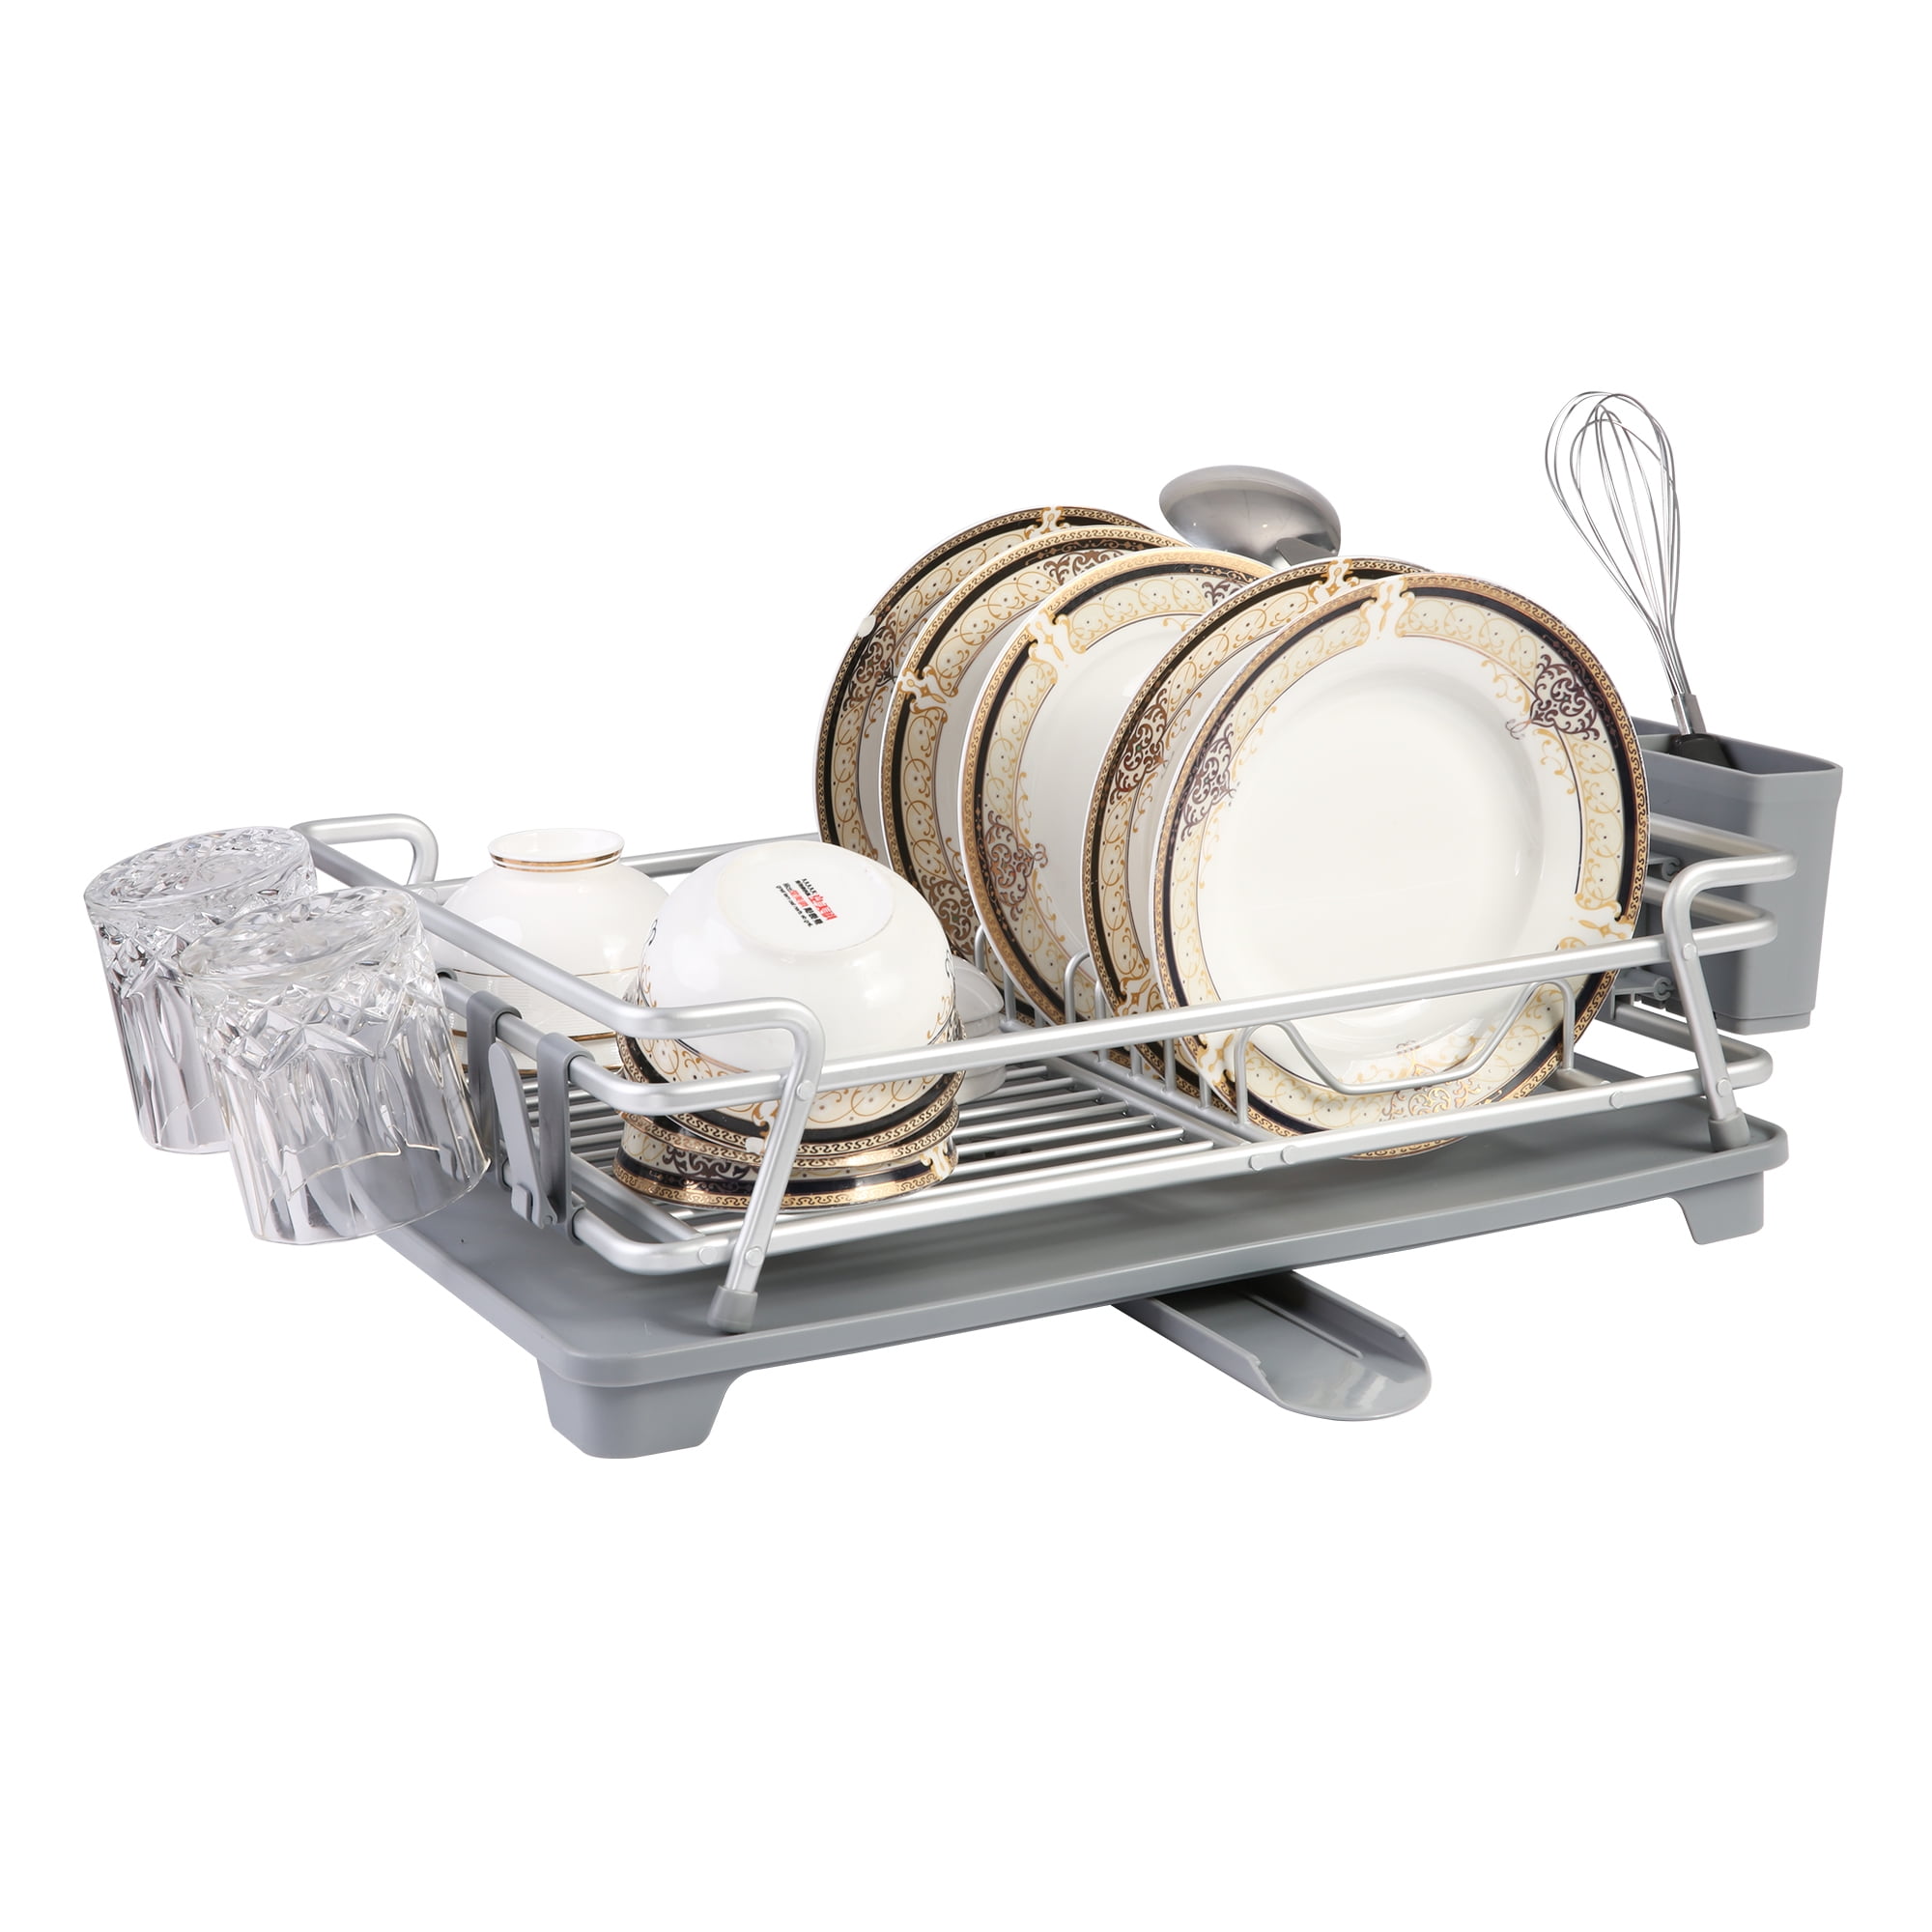 VÄLVÅRDAD Dish drying rack, stainless steel, 4 ¾x12 ½ - IKEA